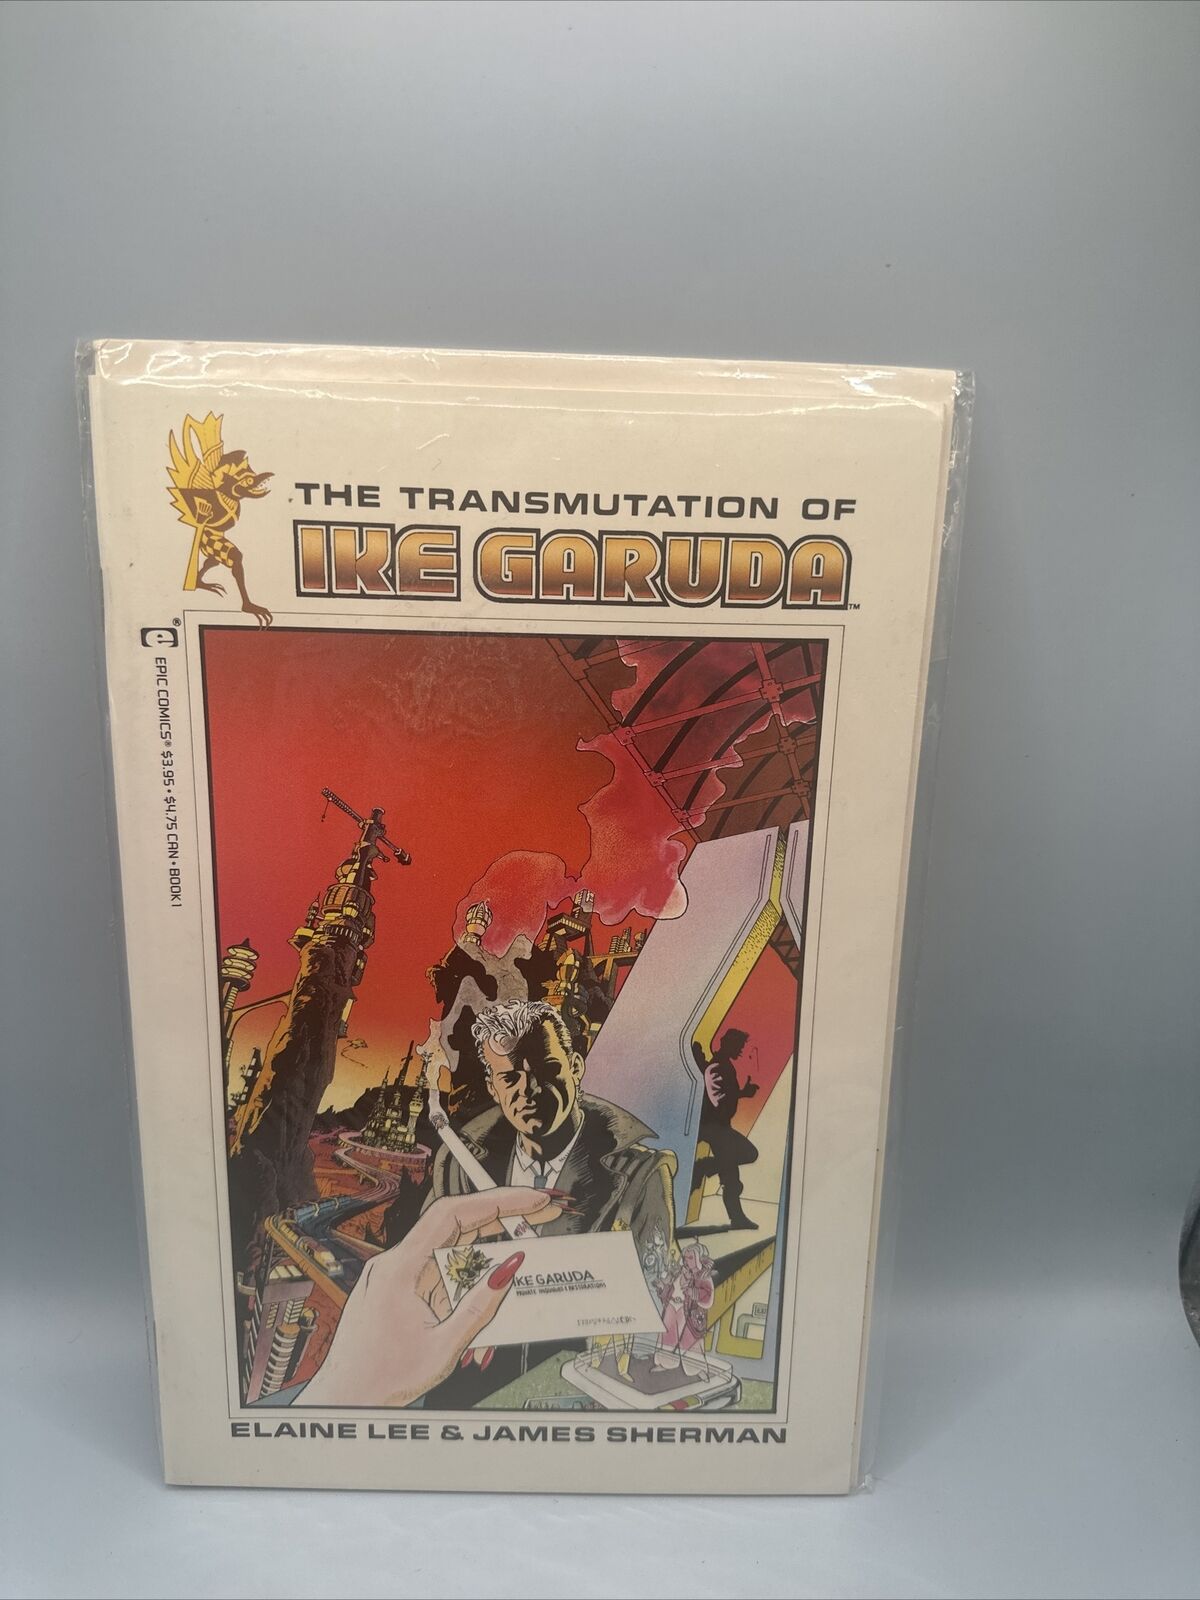 Transmutation of Ike Garuda # 1 Epic Comics NM VF Bag Boarded